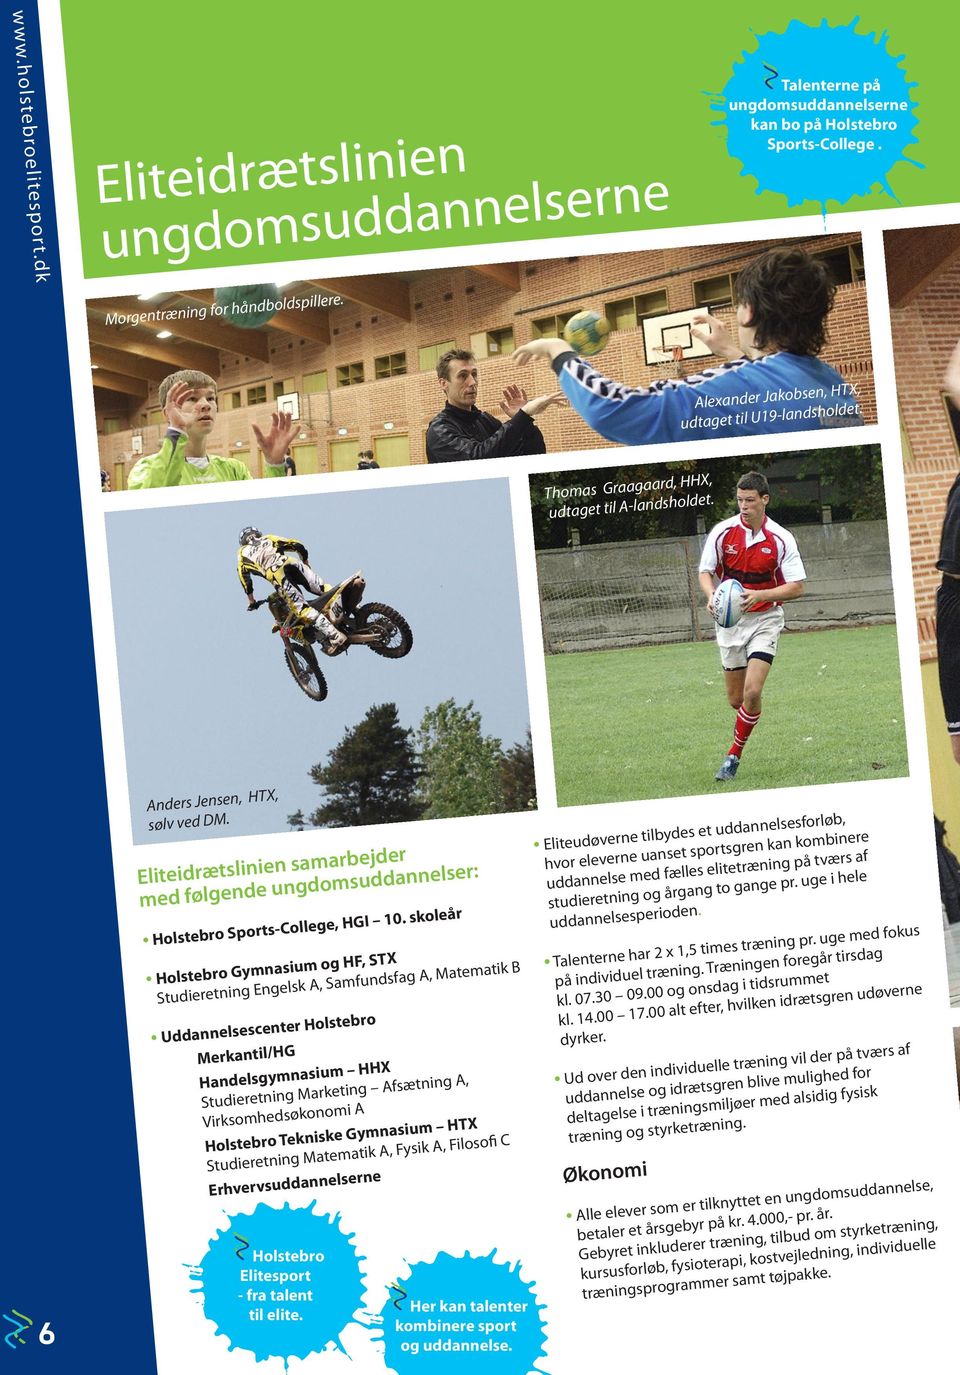 Eliteidrætslinien samarbejder med følgende ungdomsuddannelser: Holstebro Sports-College, HGI 10.